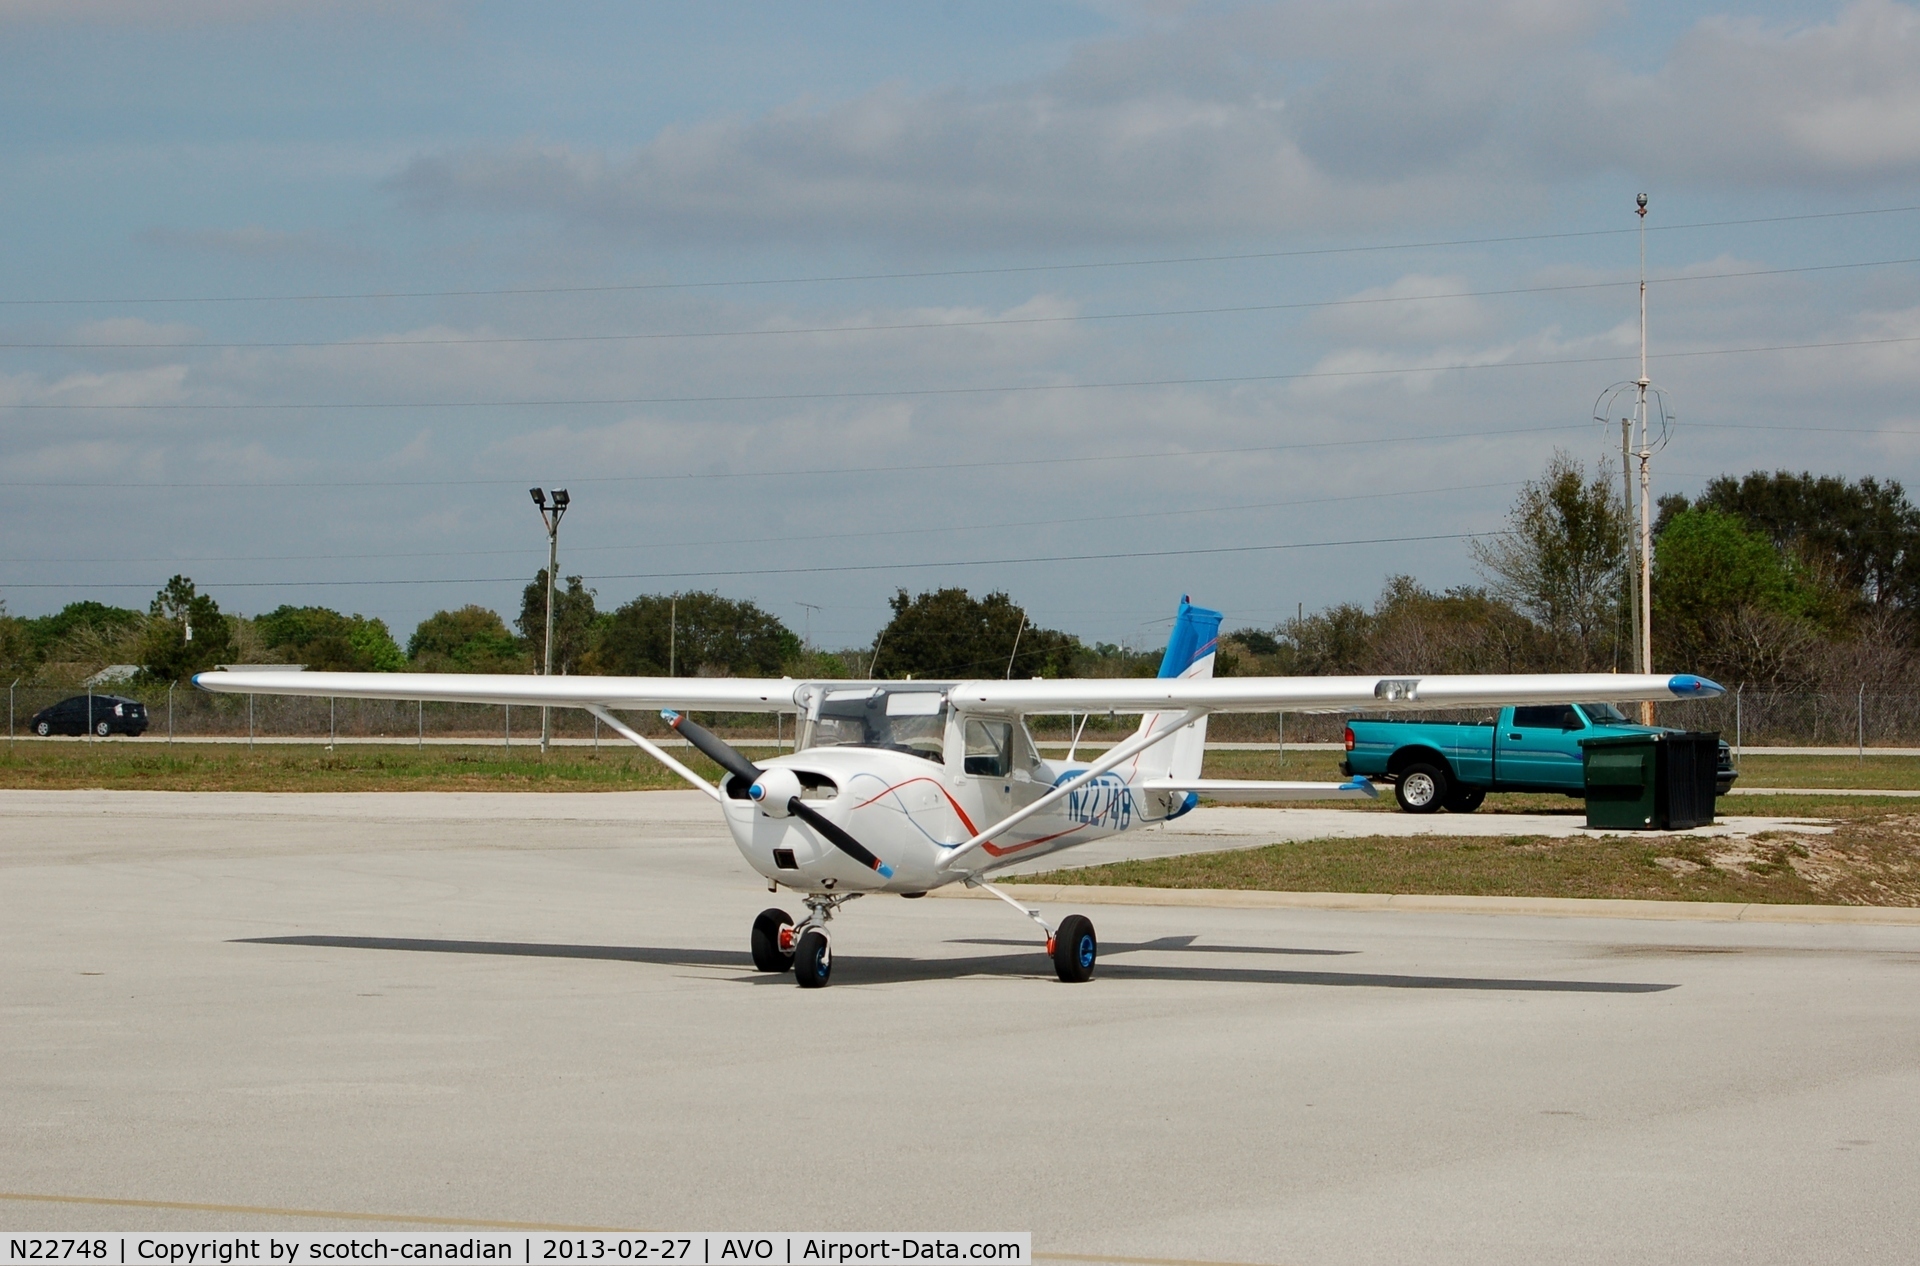 N22748, 1968 Cessna 150H C/N 15068492, 1968 Cessna 150H, N22748, at Avon Park Executive Airport, Avon Park, FL